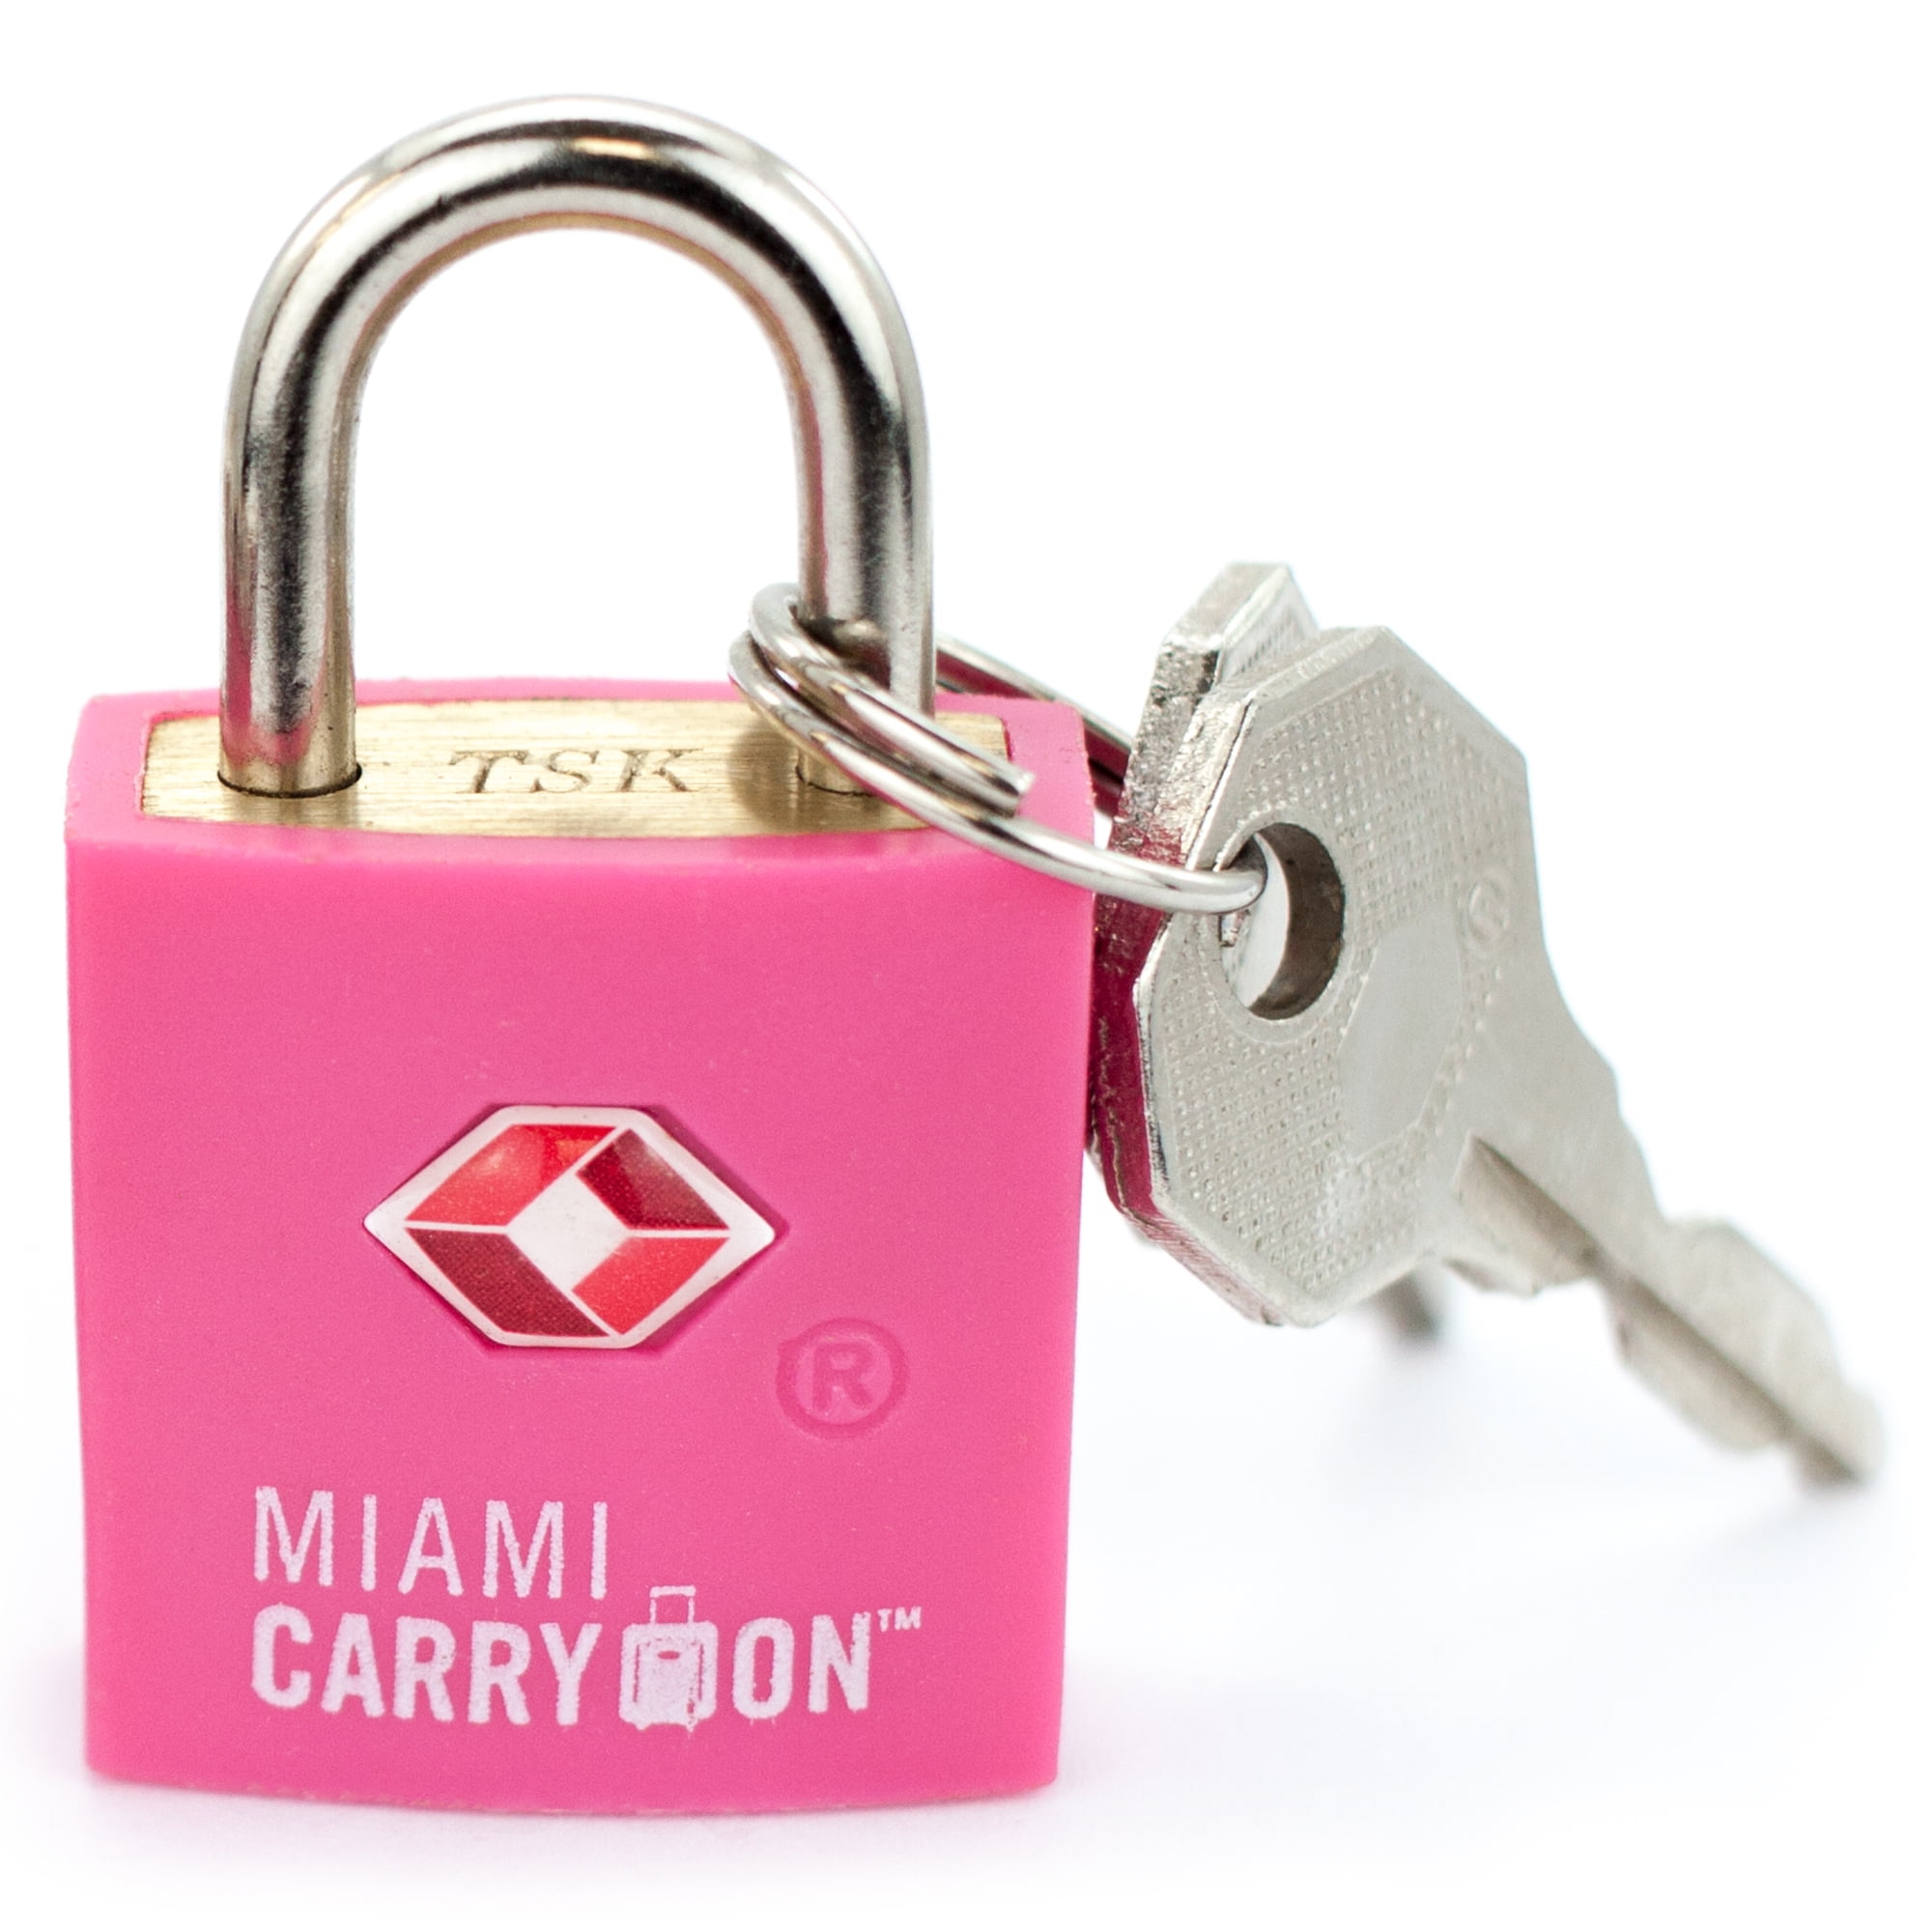 Miami CarryOn TSA Approved Padlock - TSA Keyed Luggage Lock, 0.9 Inch Wide - Pink - 0